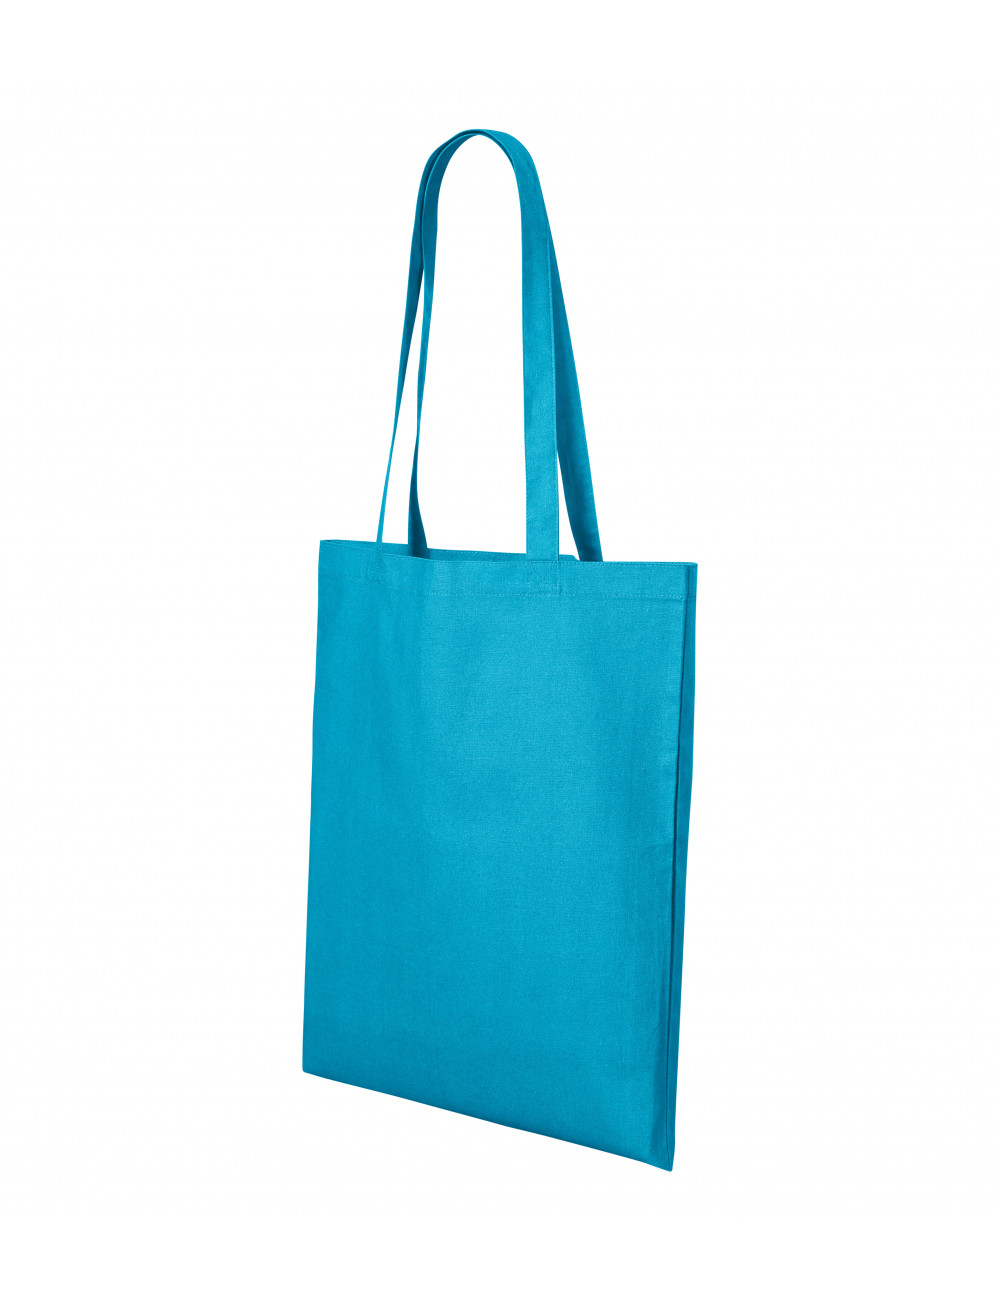 Unisex shopping bag shopper 921 turquoise Adler Malfini